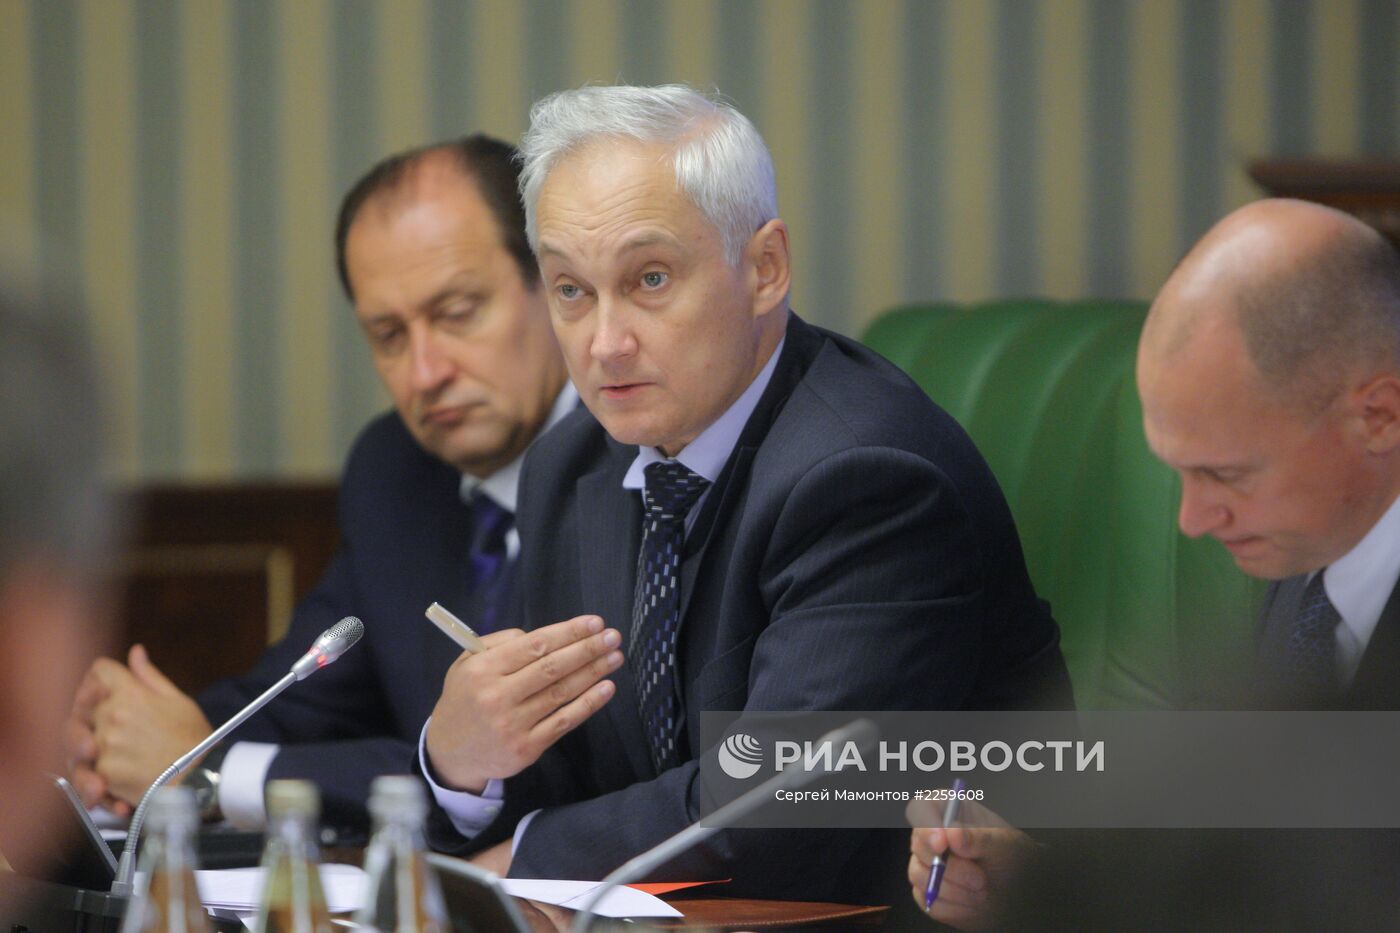 Д.Рогозин провел заседание Военно-промышленной комиссии